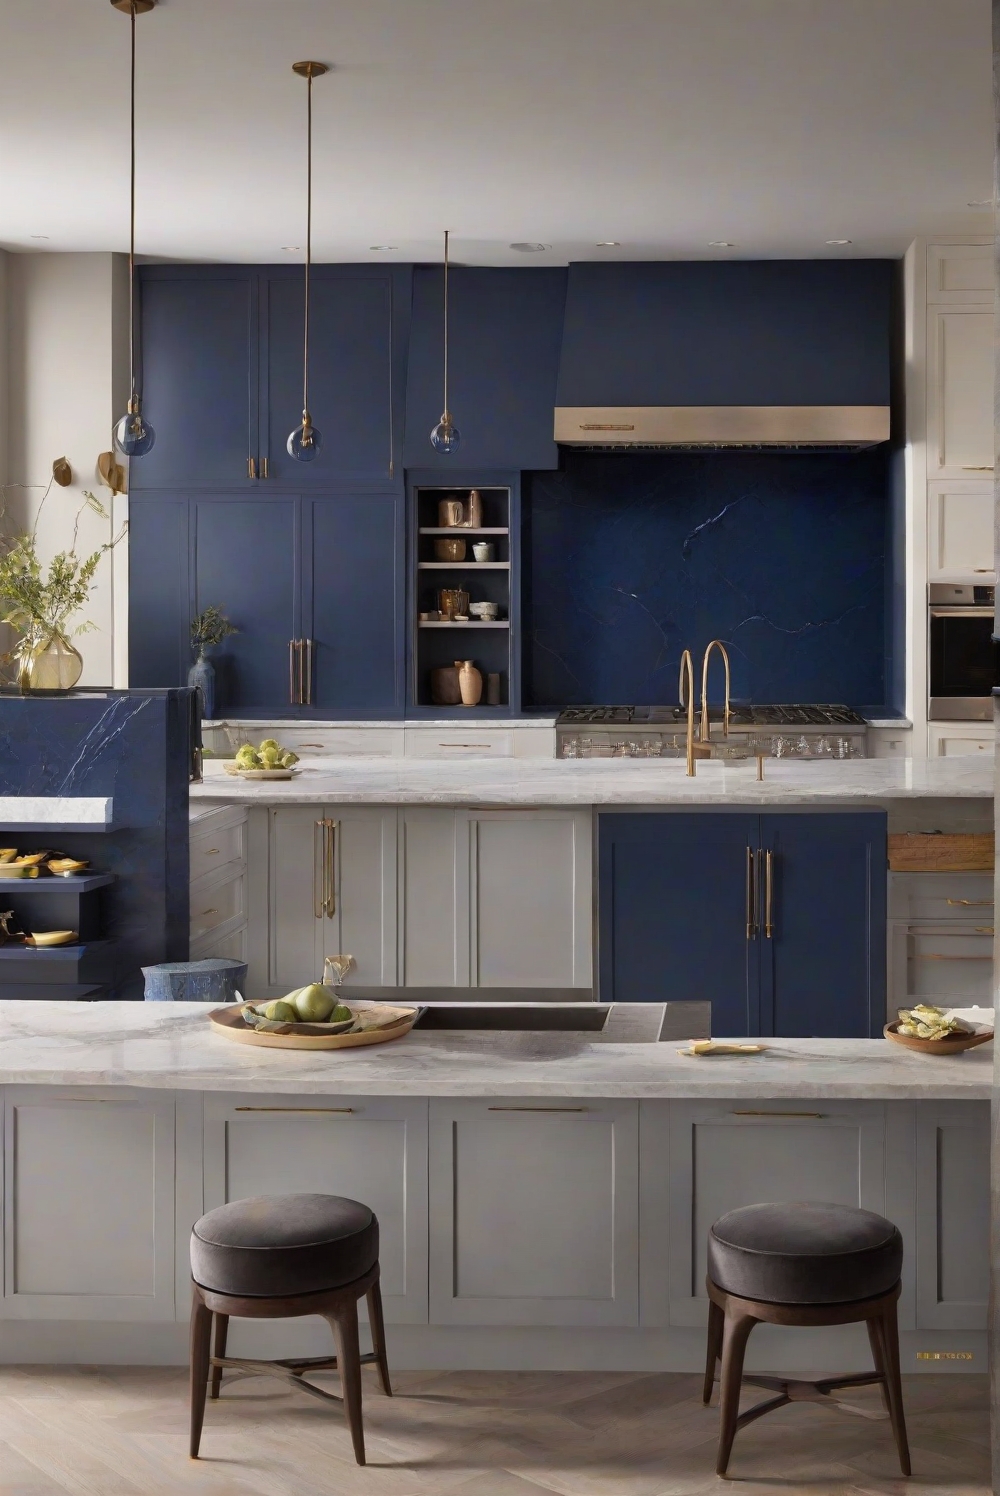 Smoky Azurite paint, Azure kitchen decor, Mystical blue interiors, Enchanting kitchen design, Interior design color palette, Kitchen paint ideas, Home decor inspiration